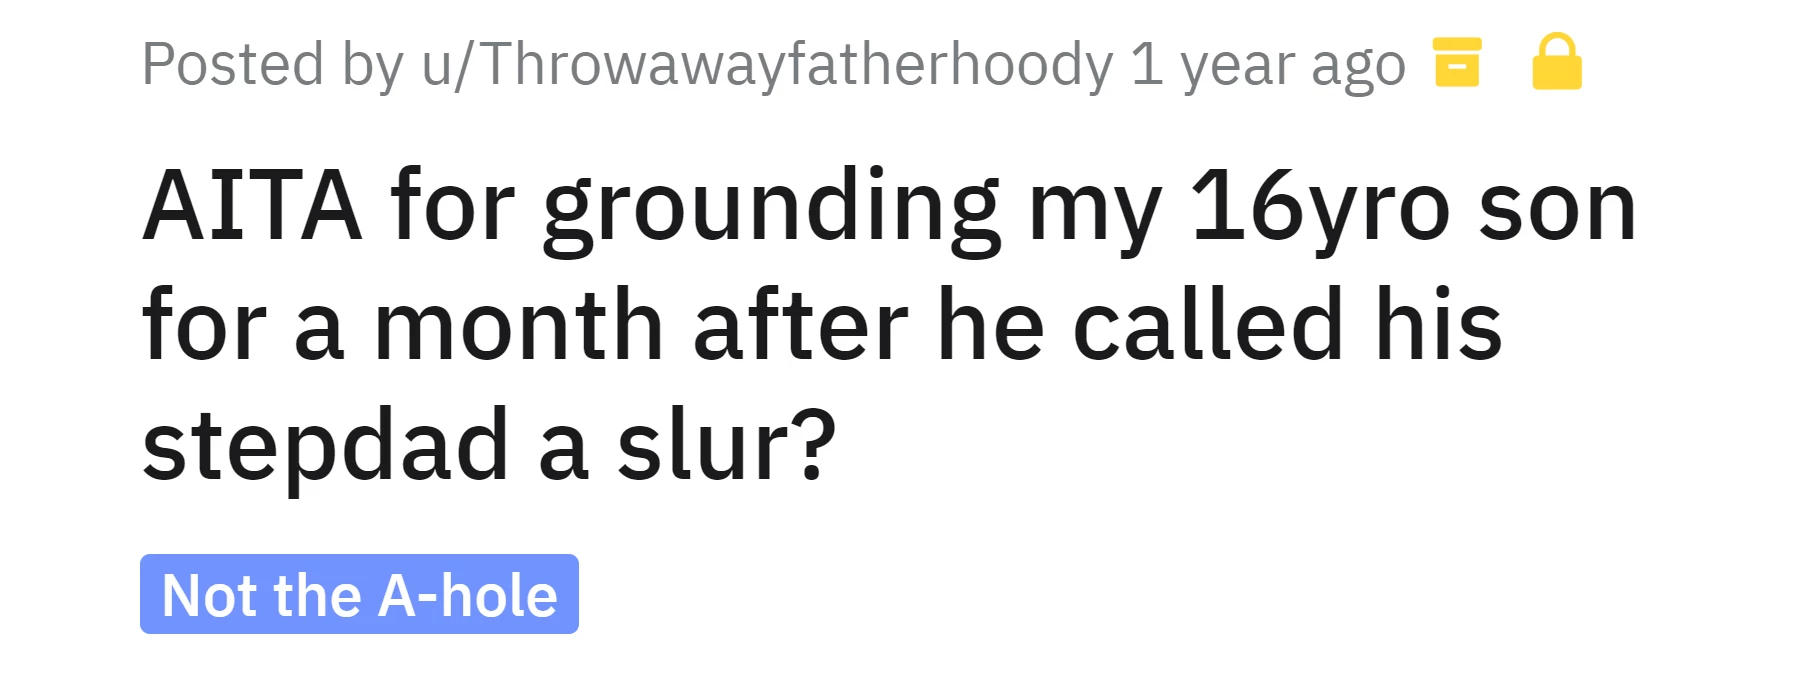 Throwawayfatherhoody's story